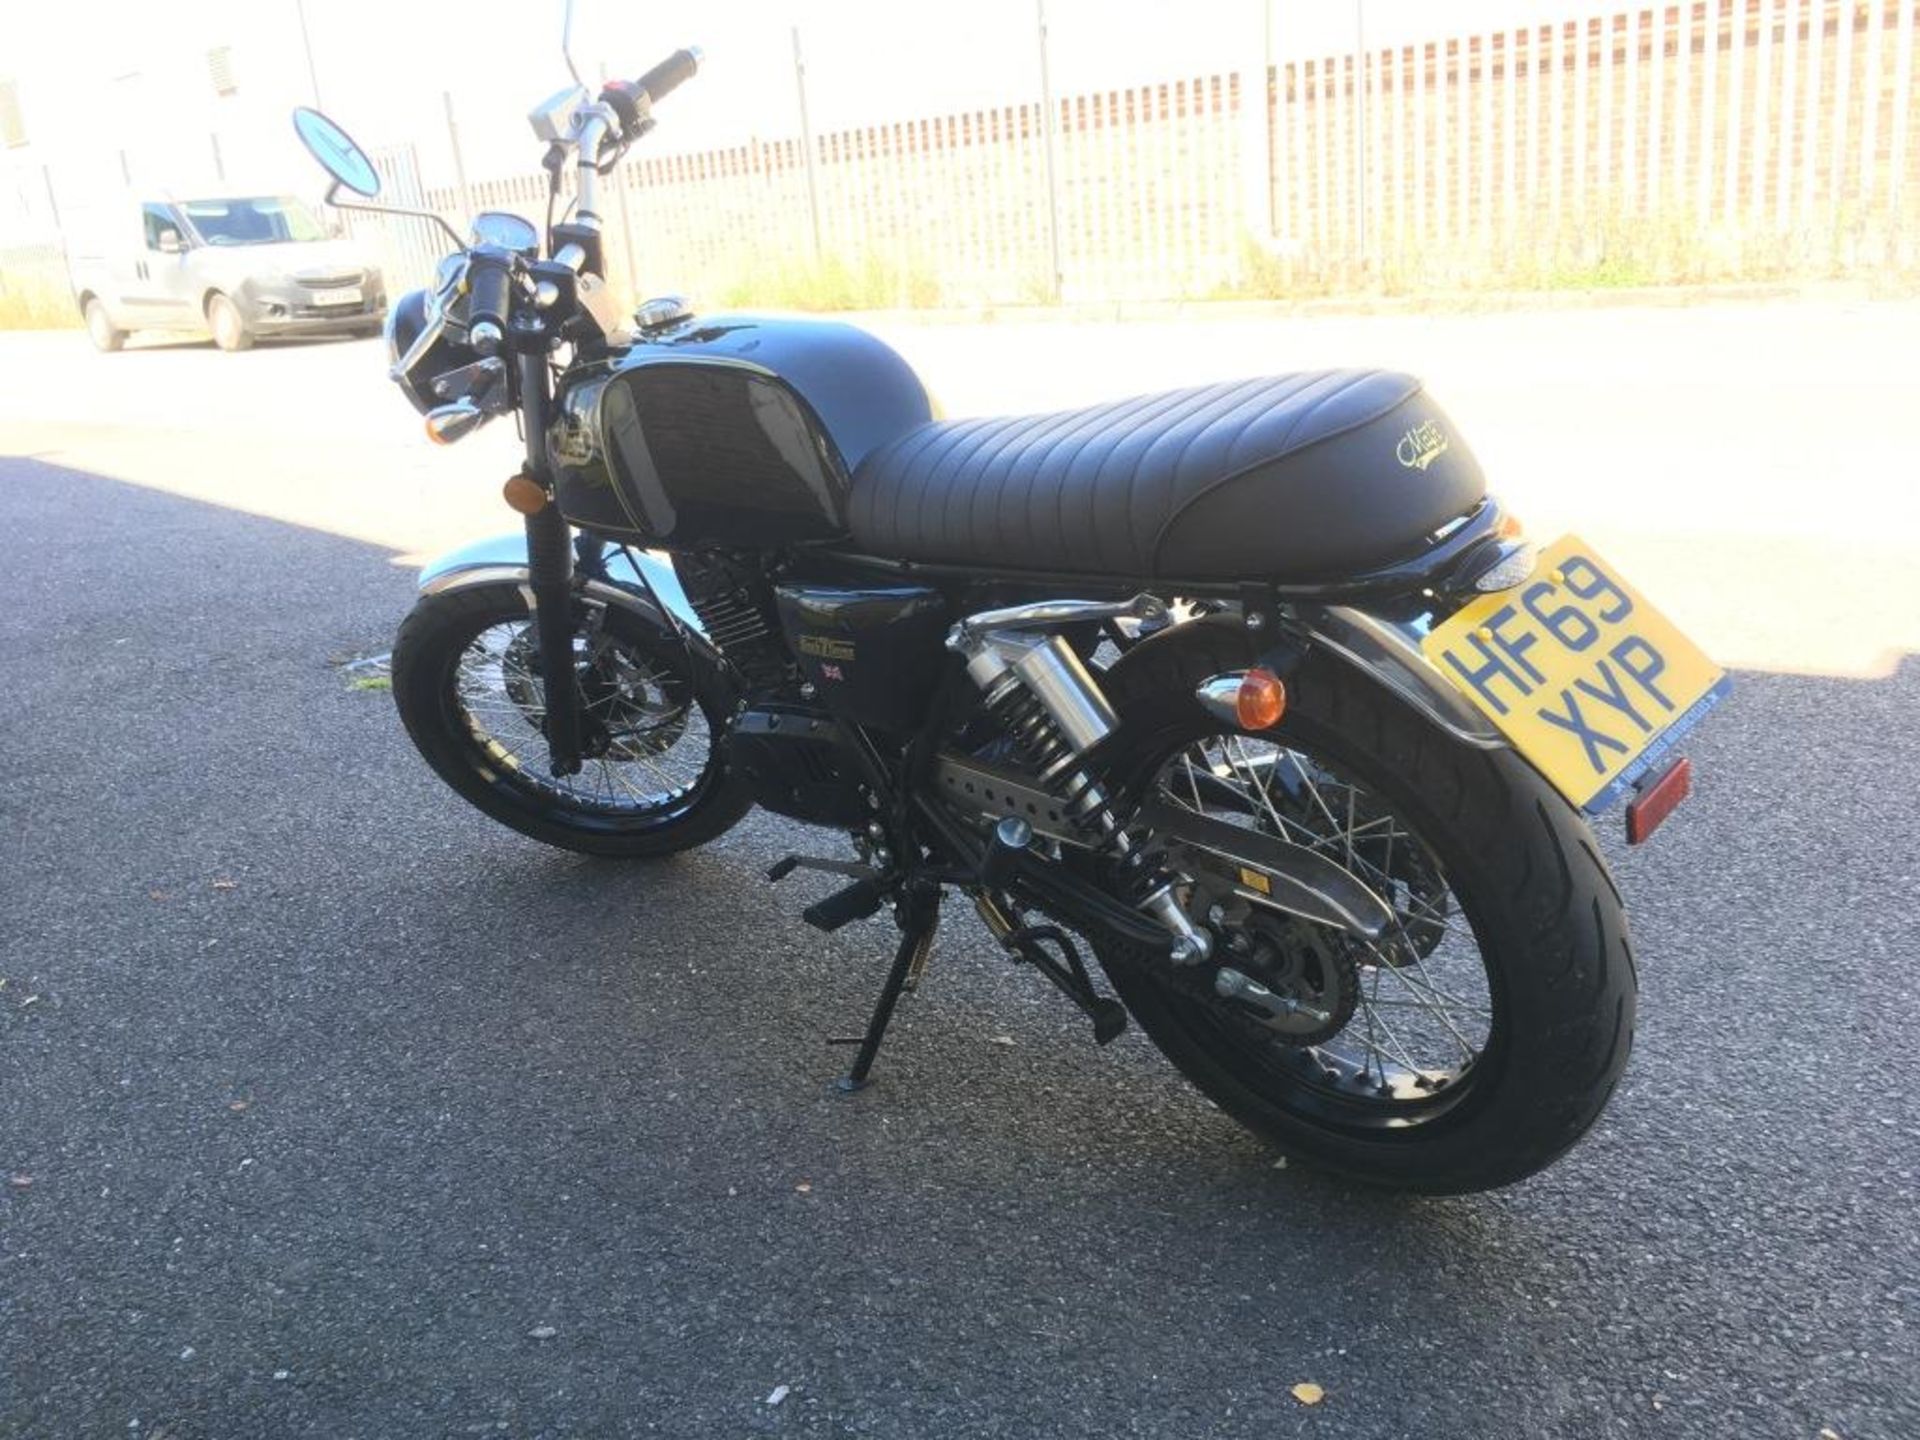 Mash Black Seven 125 motorcycle, Registration number: HF69 XYP, Date of Registration: 18/10/2019, - Image 6 of 11